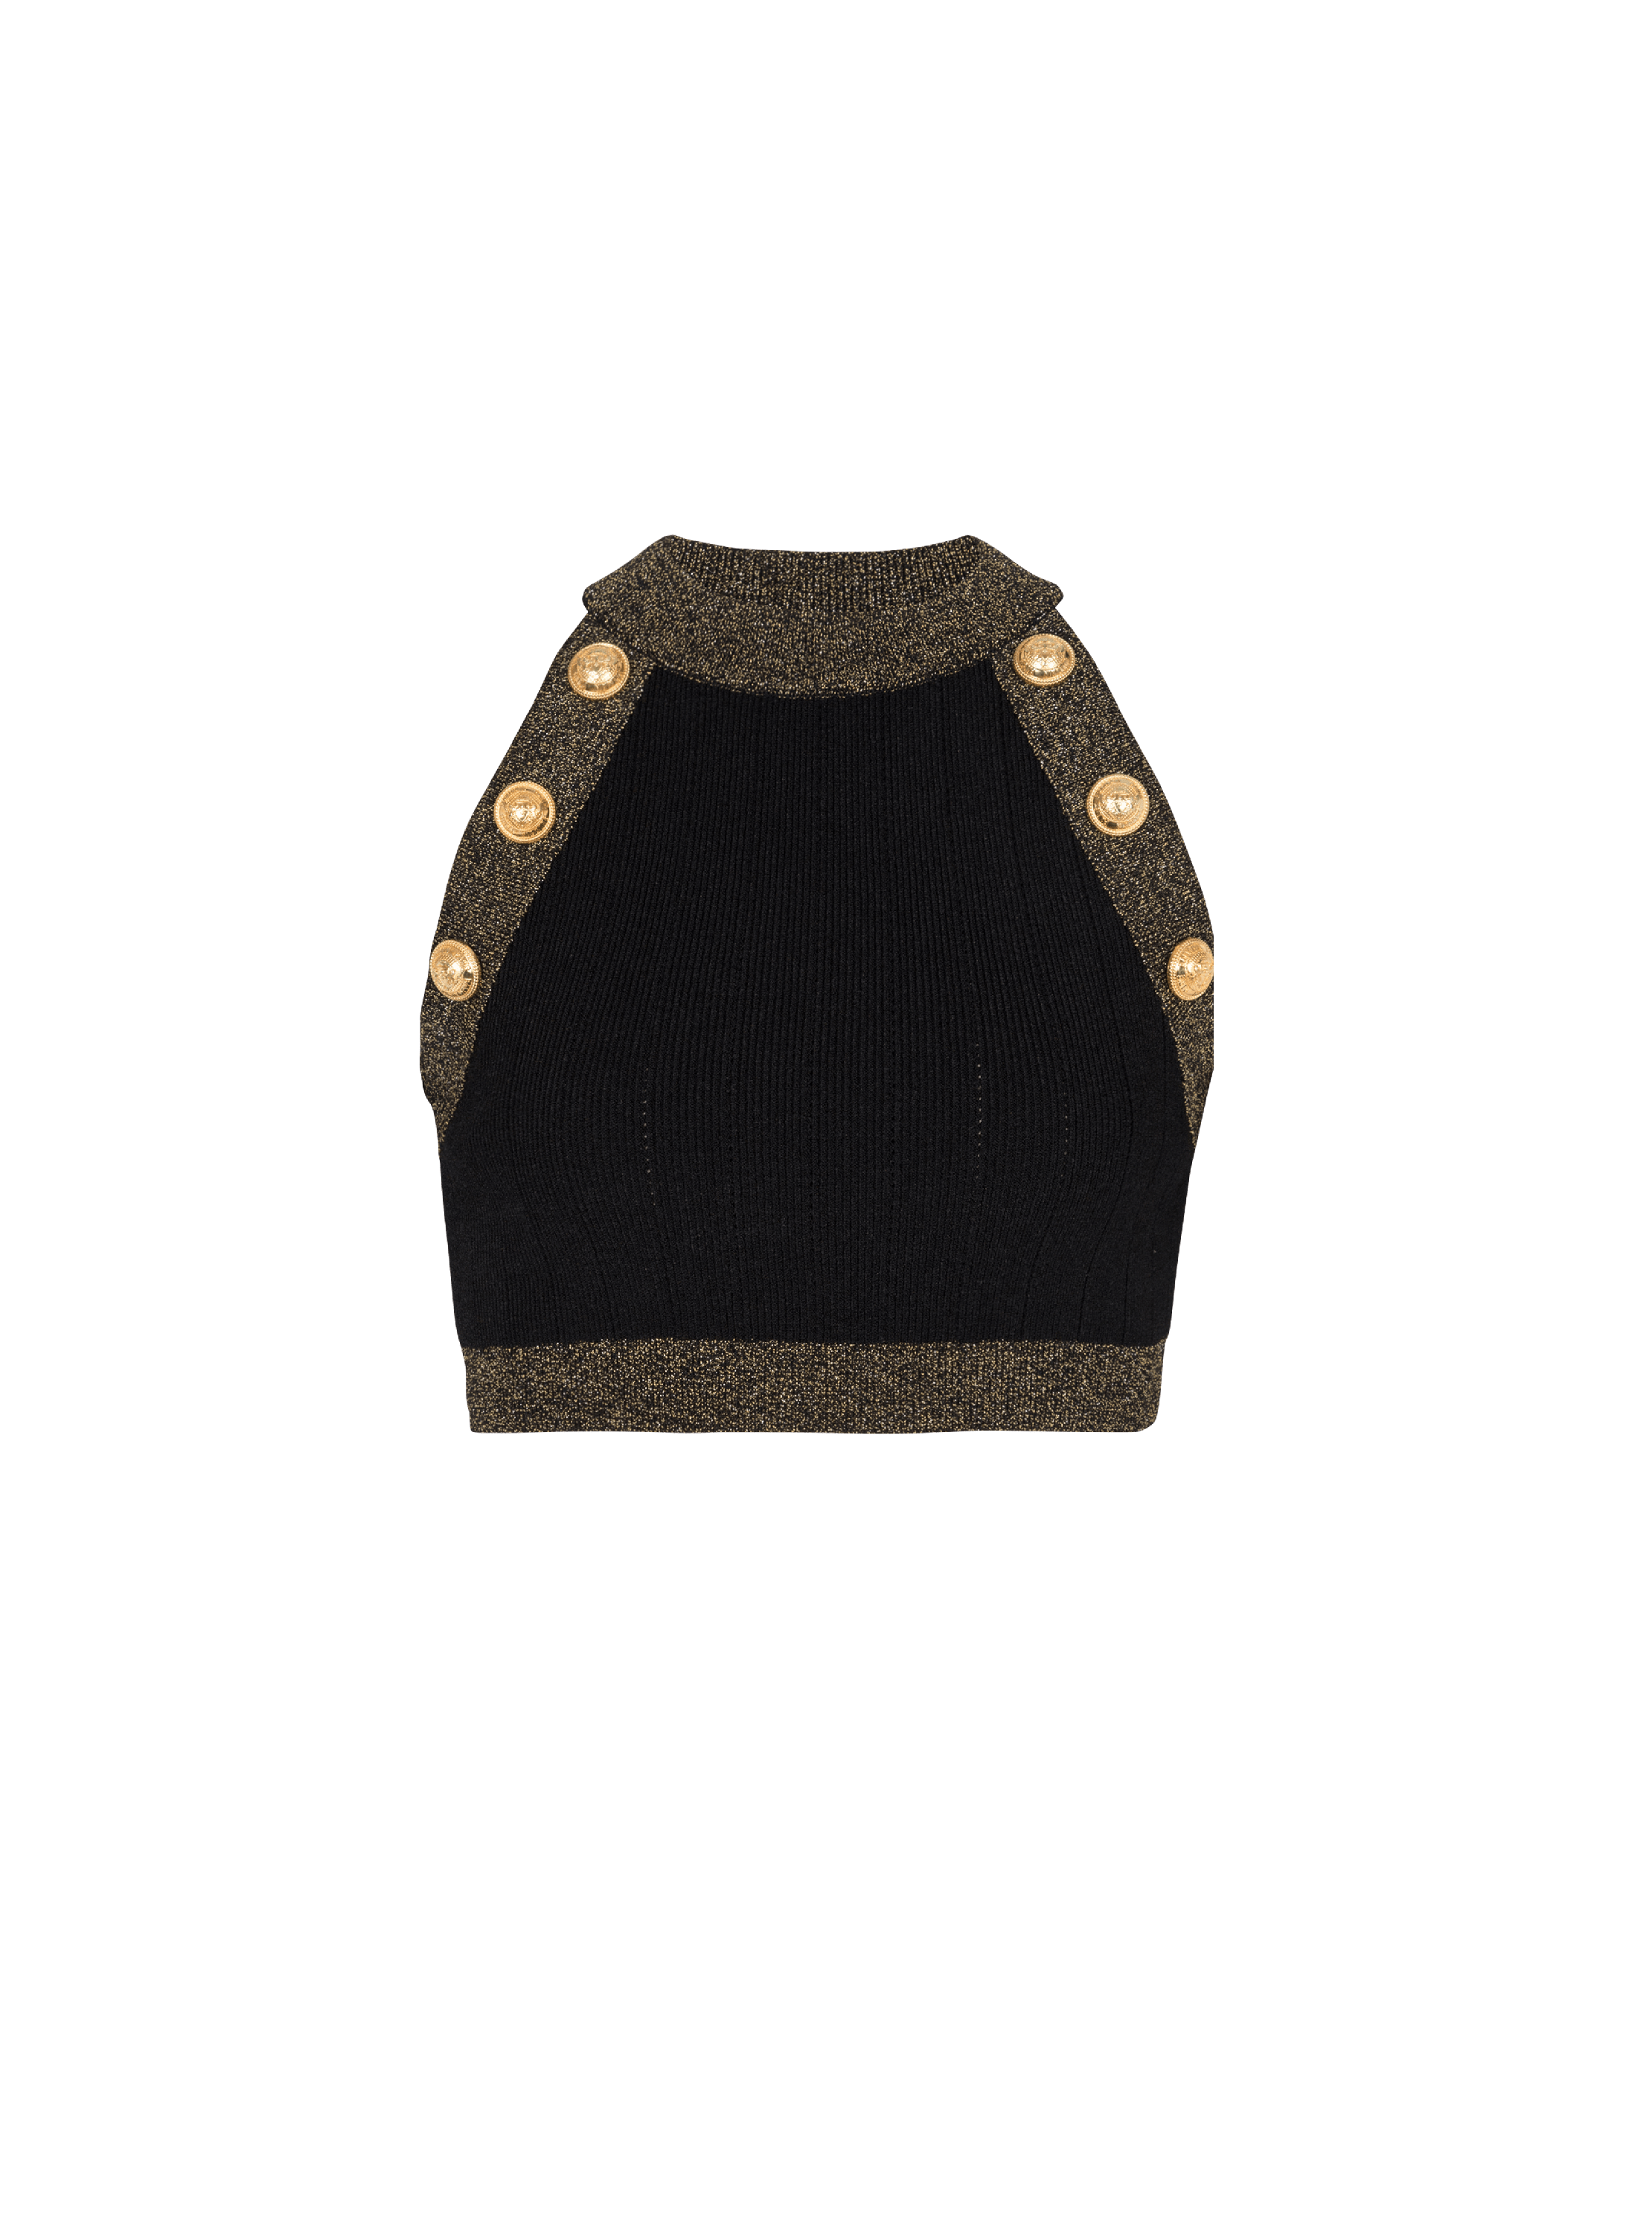 Gold-trimmed knit crop top, black, hi-res